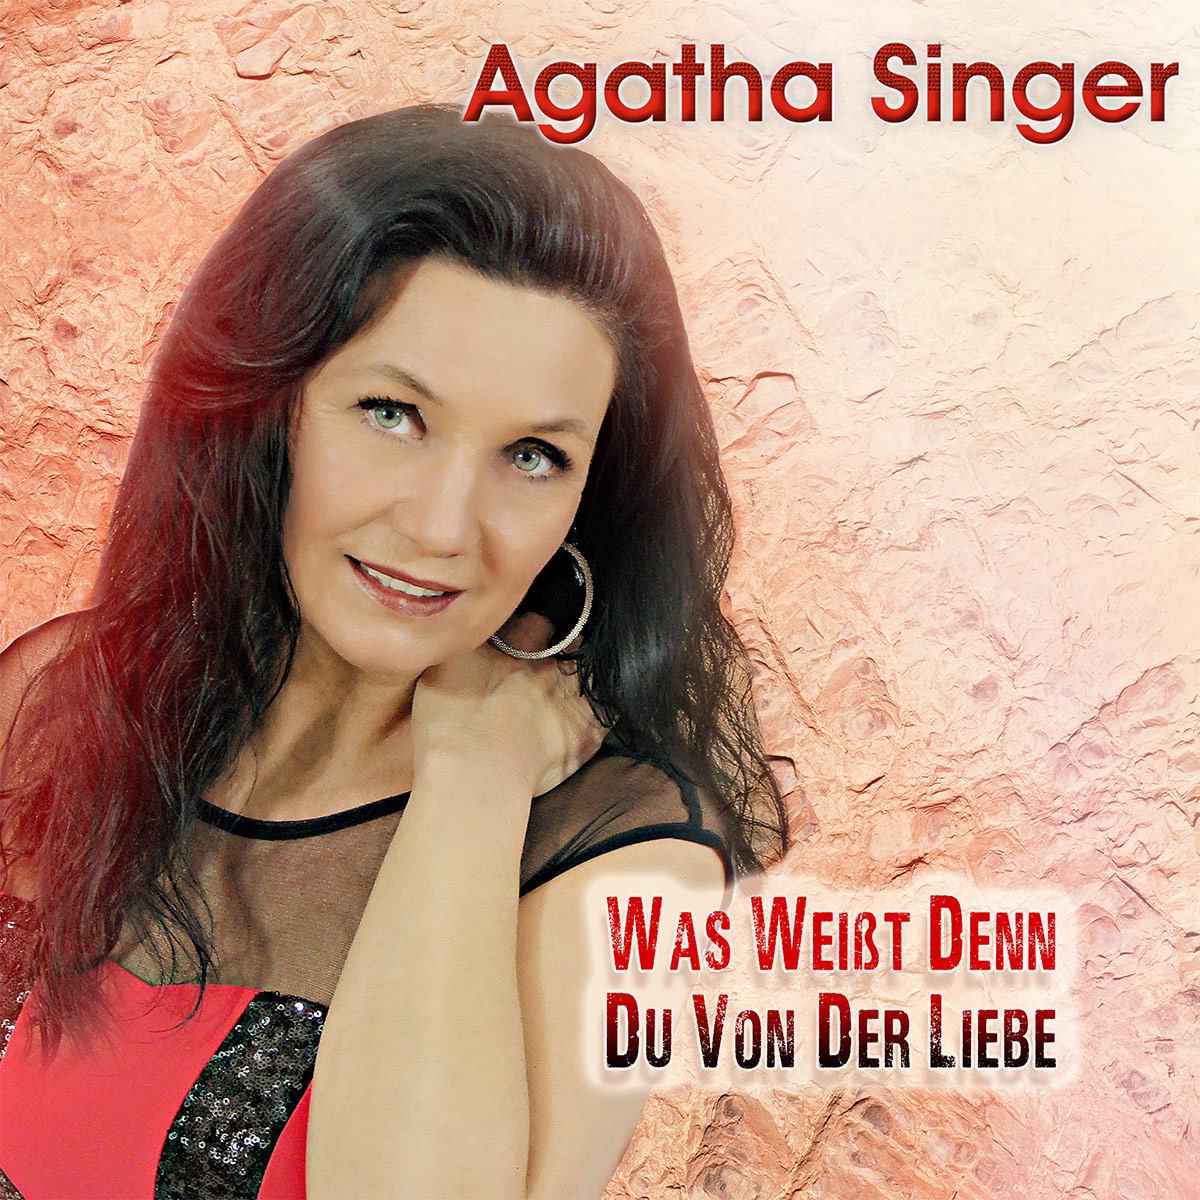 Agatha Singer - Was weit denn Du von der Liebe - Cover.jpg